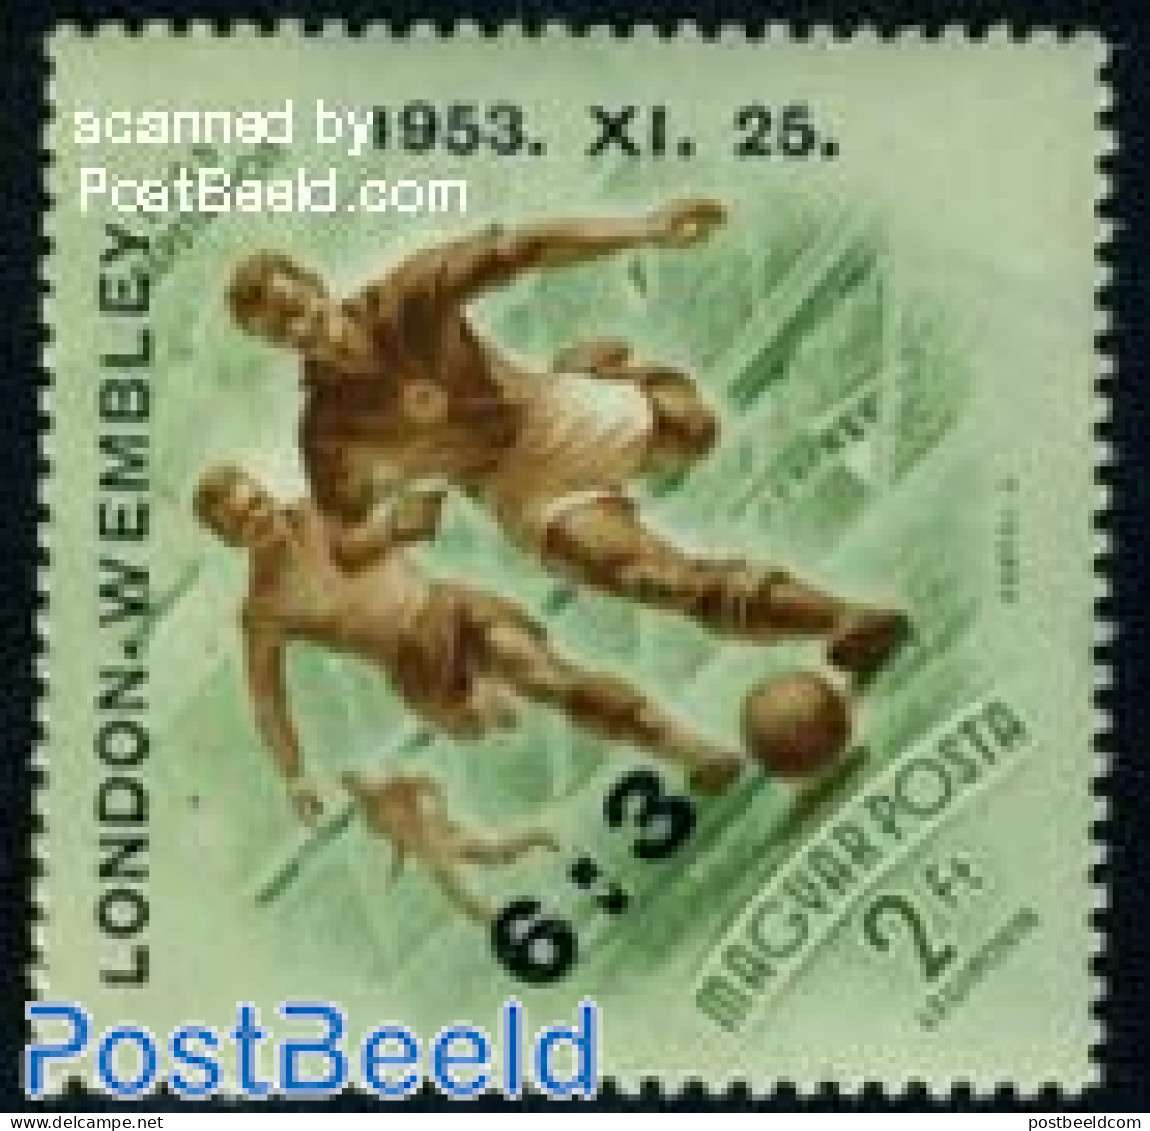 Hungary 1953 Football Winners 1v, Unused (hinged), Sport - Football - Unused Stamps